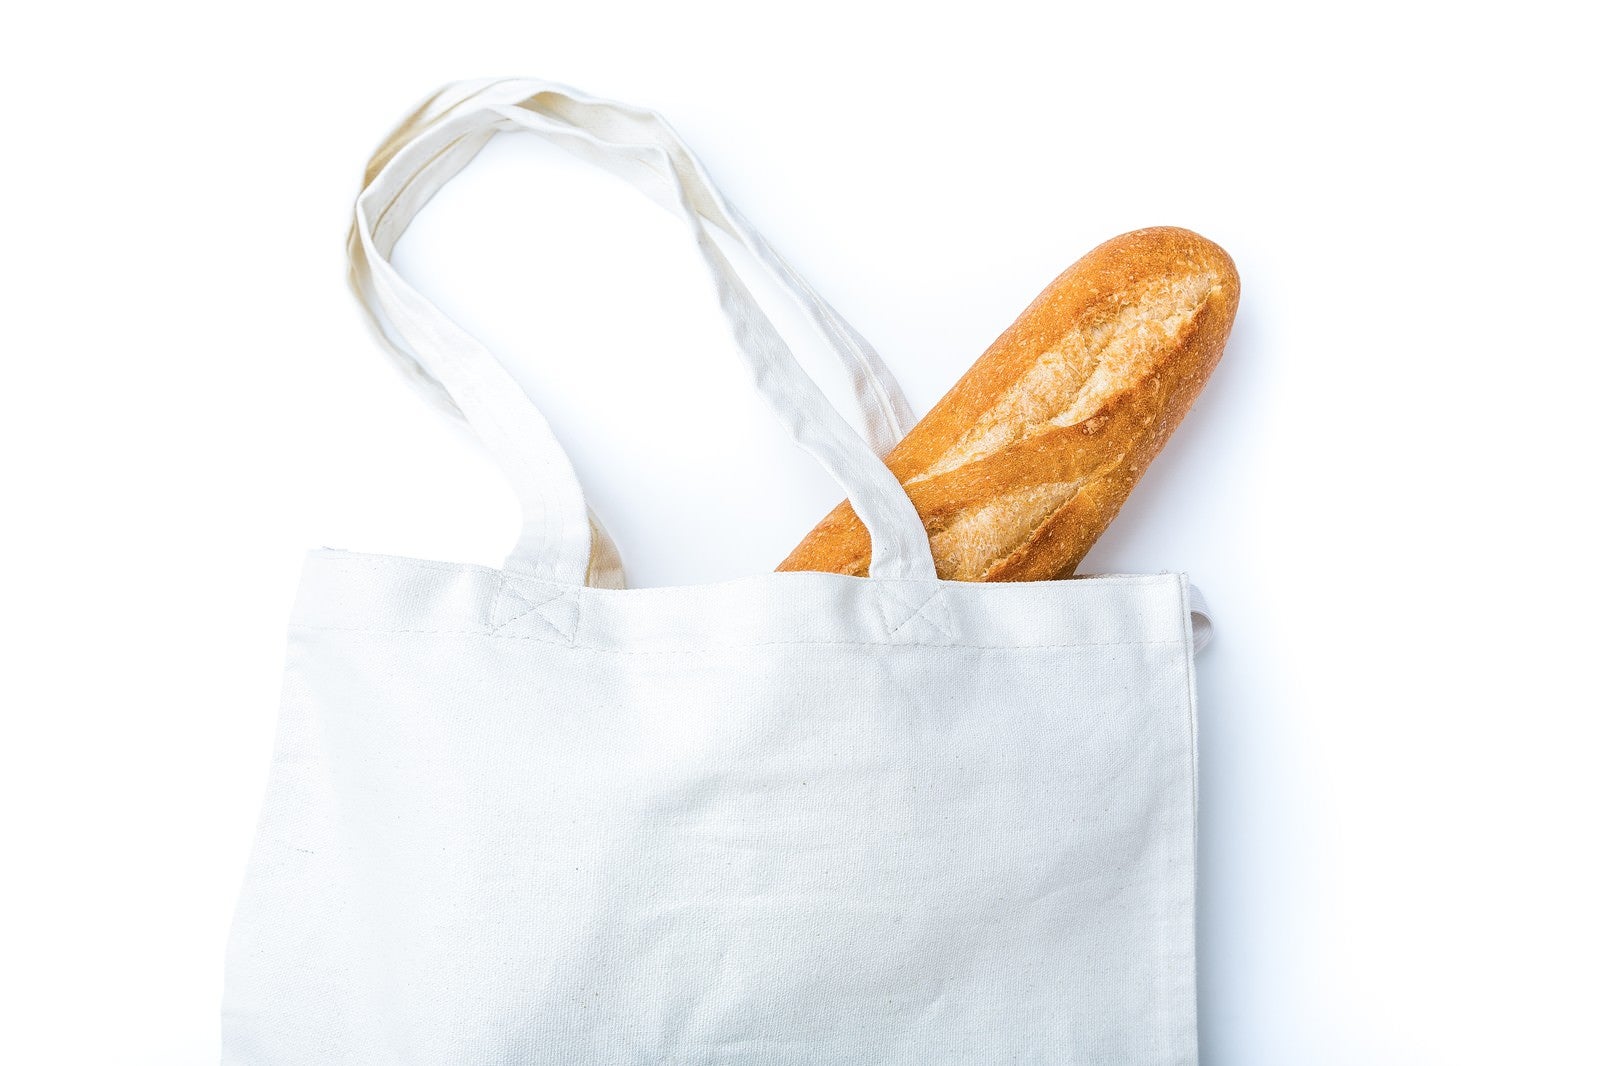 「無地のトートバッグに入ったフランスパン」の写真